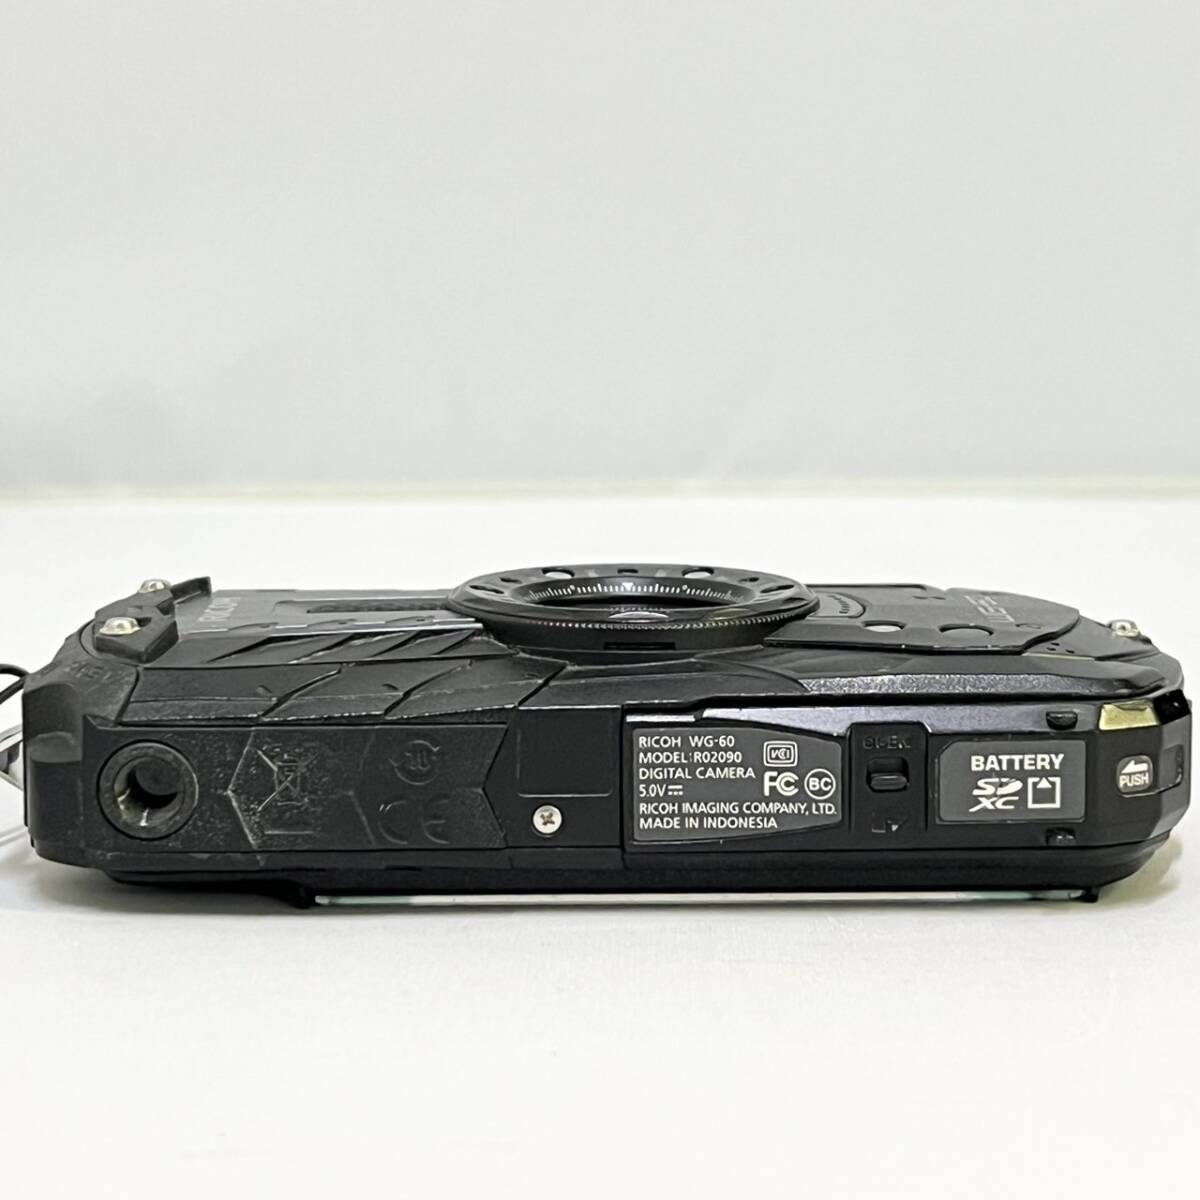 BEg090I 60 RICOH WG-60 Ricoh цифровая камера черный водонепроницаемый камера 14m водонепроницаемый ударопрочный пыленепроницаемый выдерживающий холод 1600 десять тысяч пикселей ma-me-do режим установка 